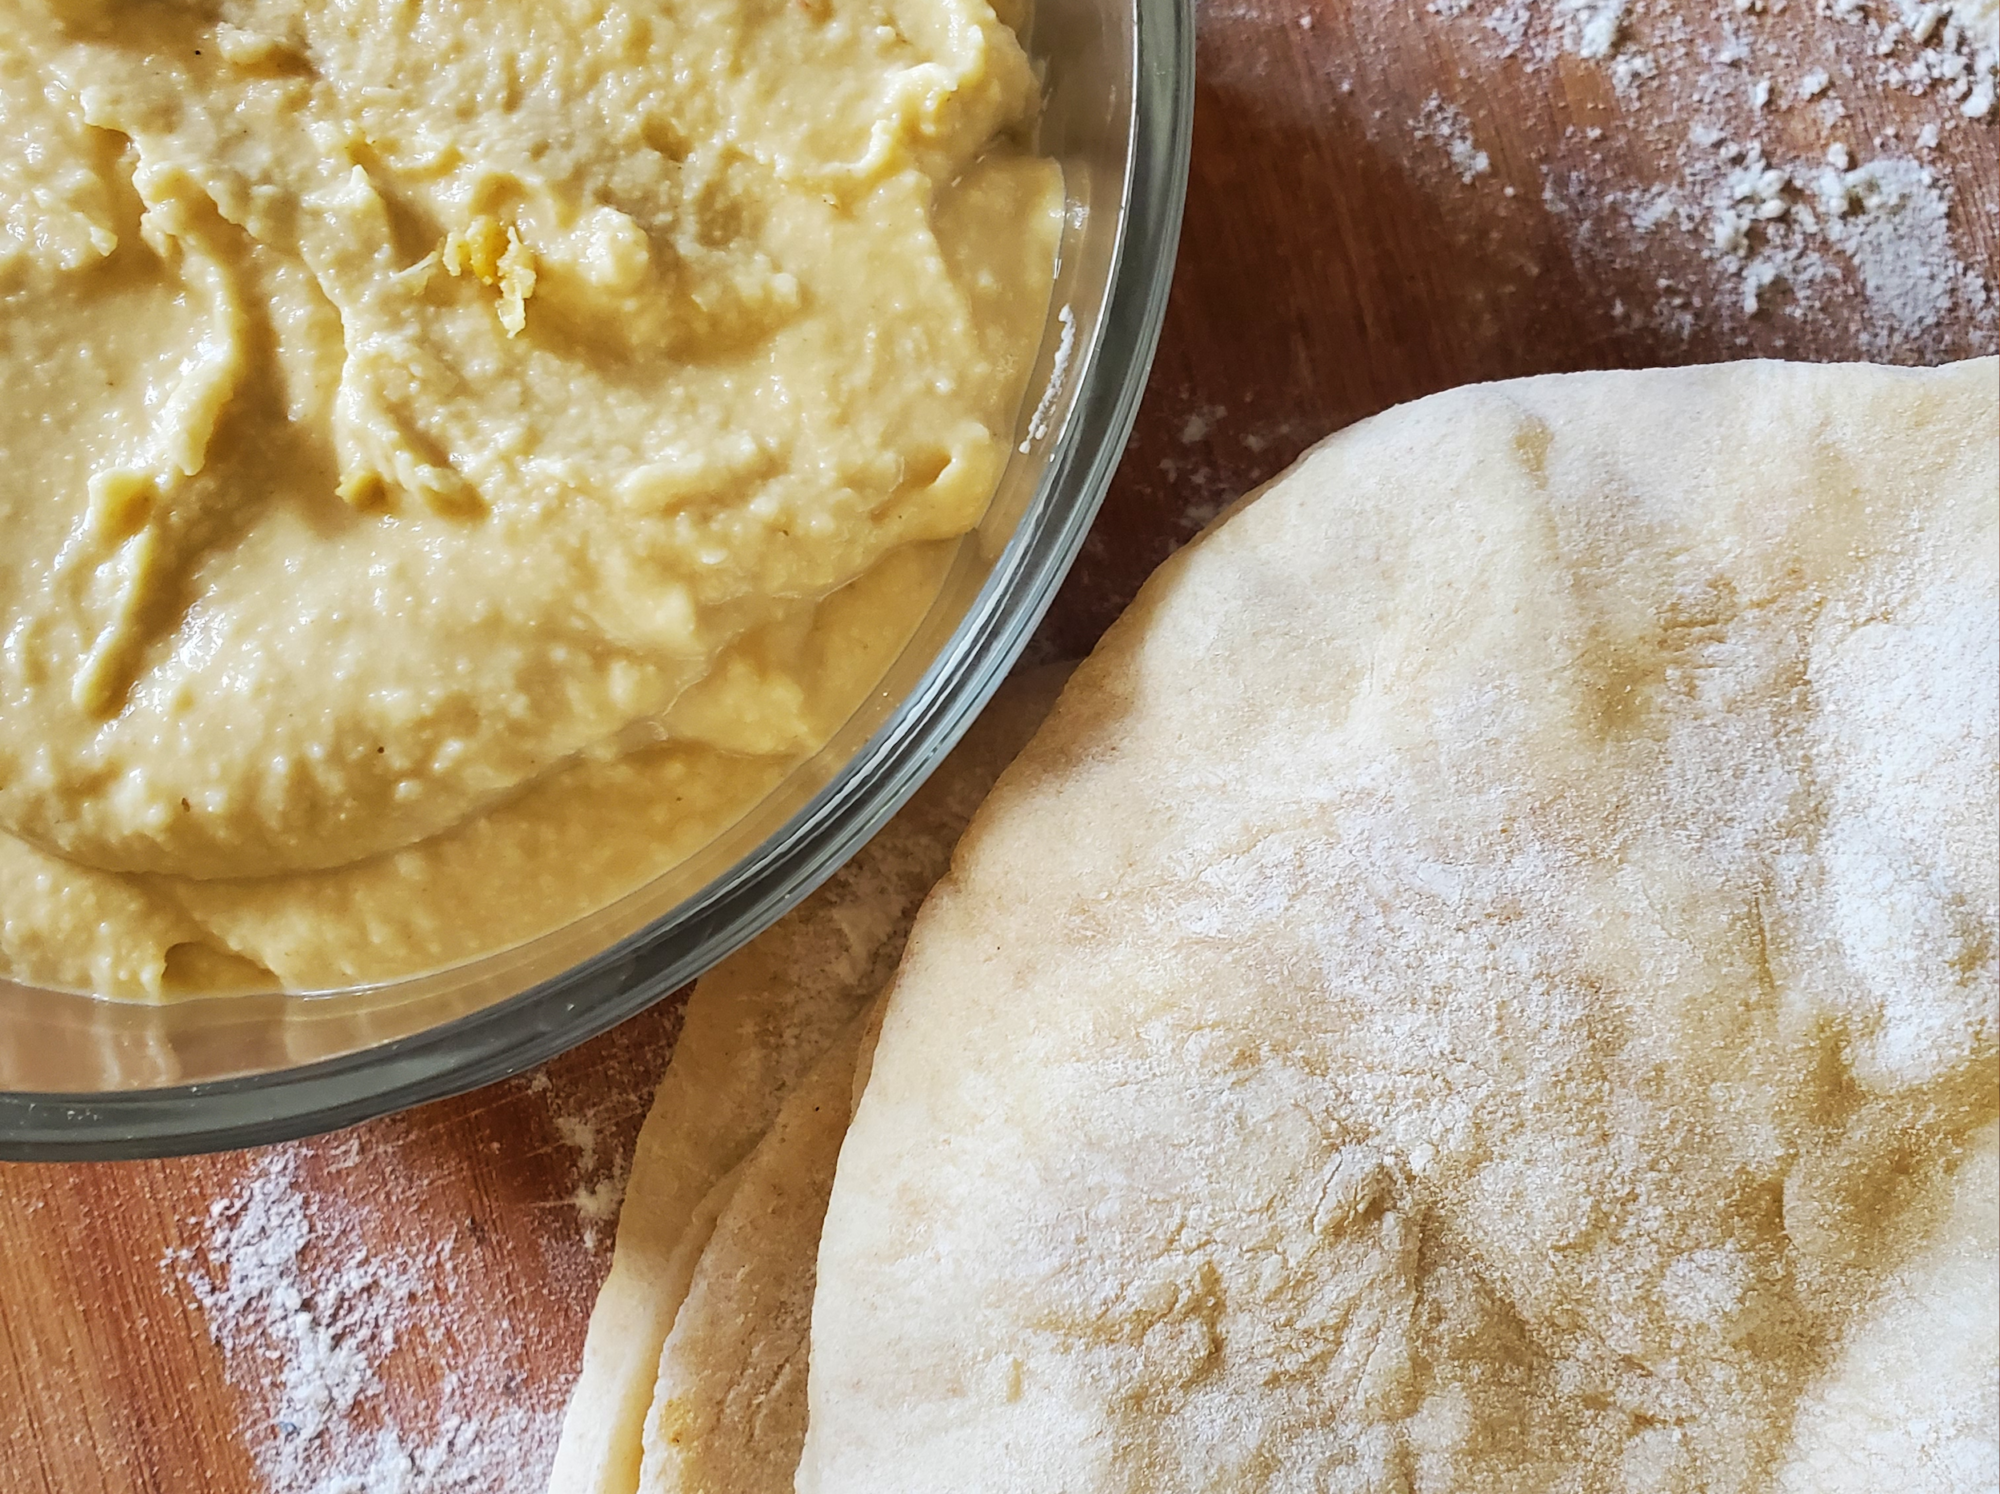 The Fundamentals of Making Hummus